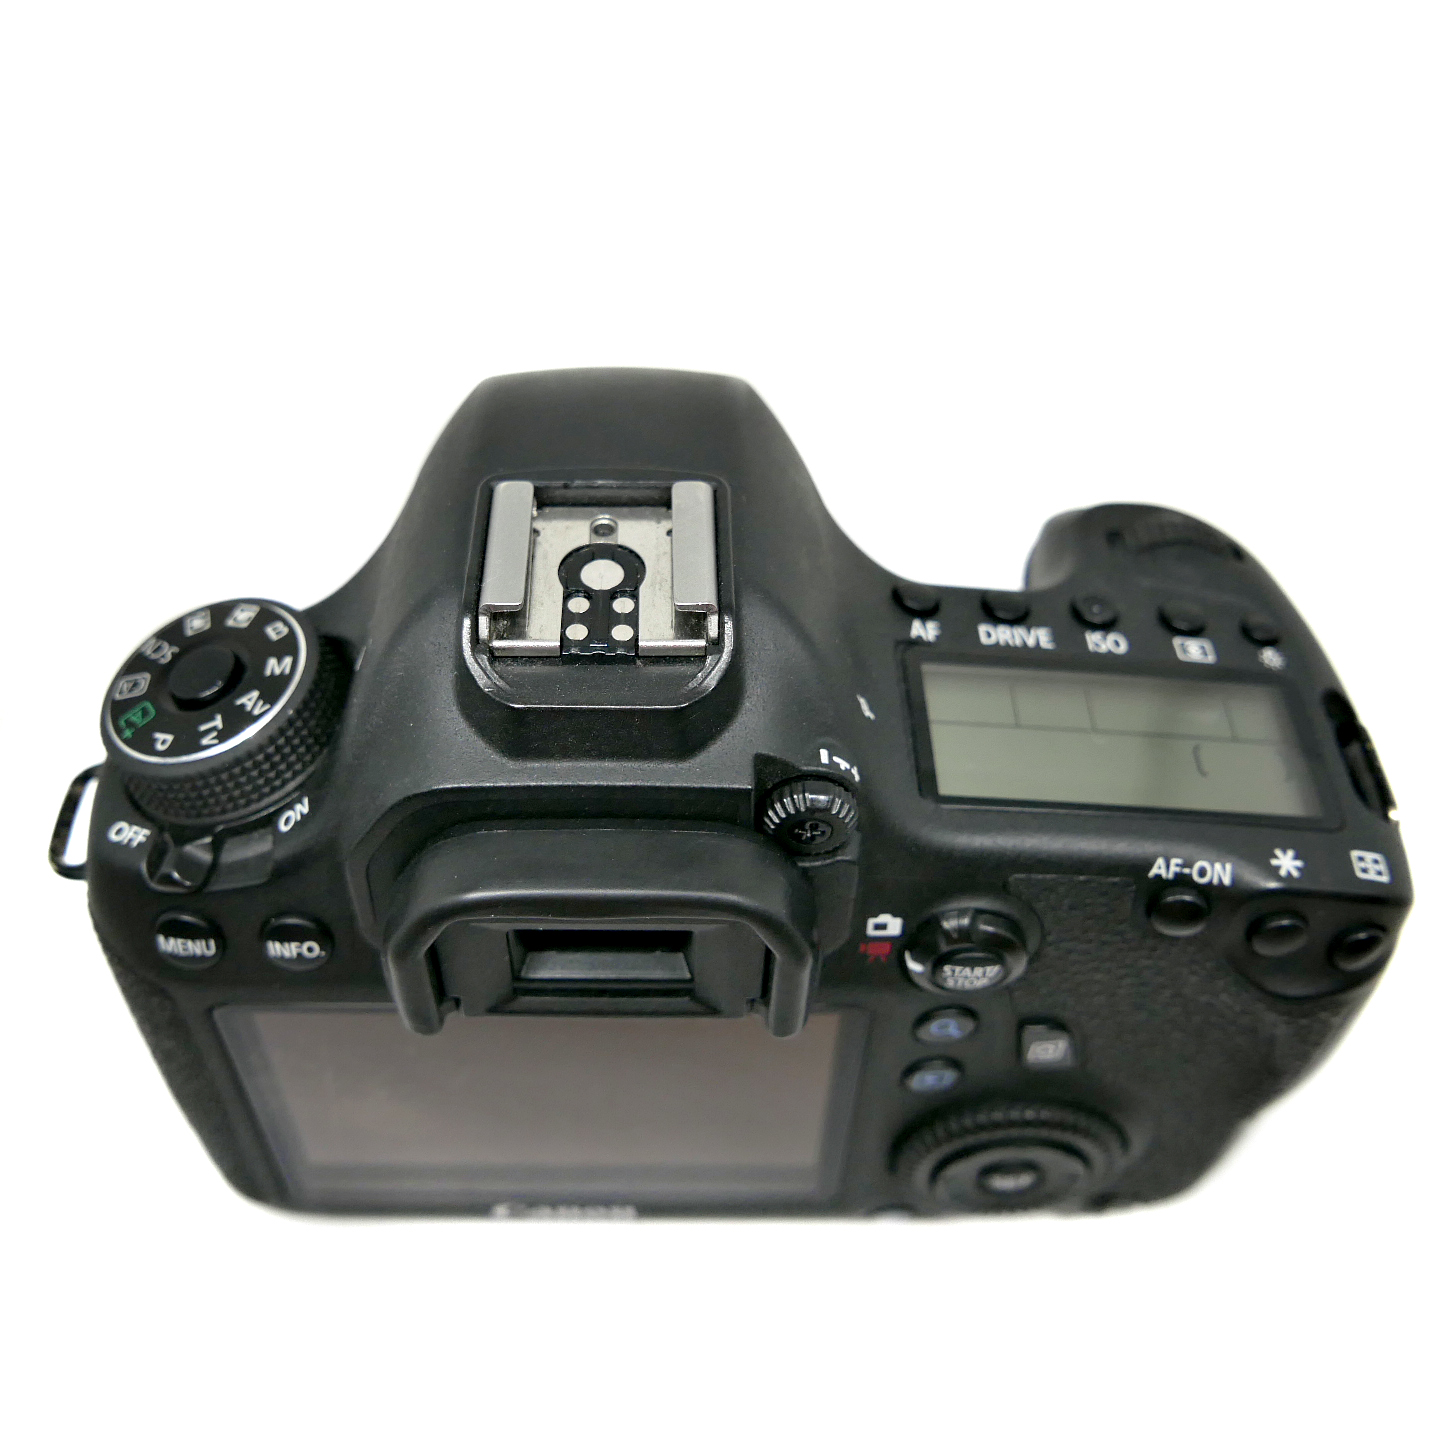 (Myyty) Canon EOS 6D runko Wifillä (SC: 74150) (Käytetty)